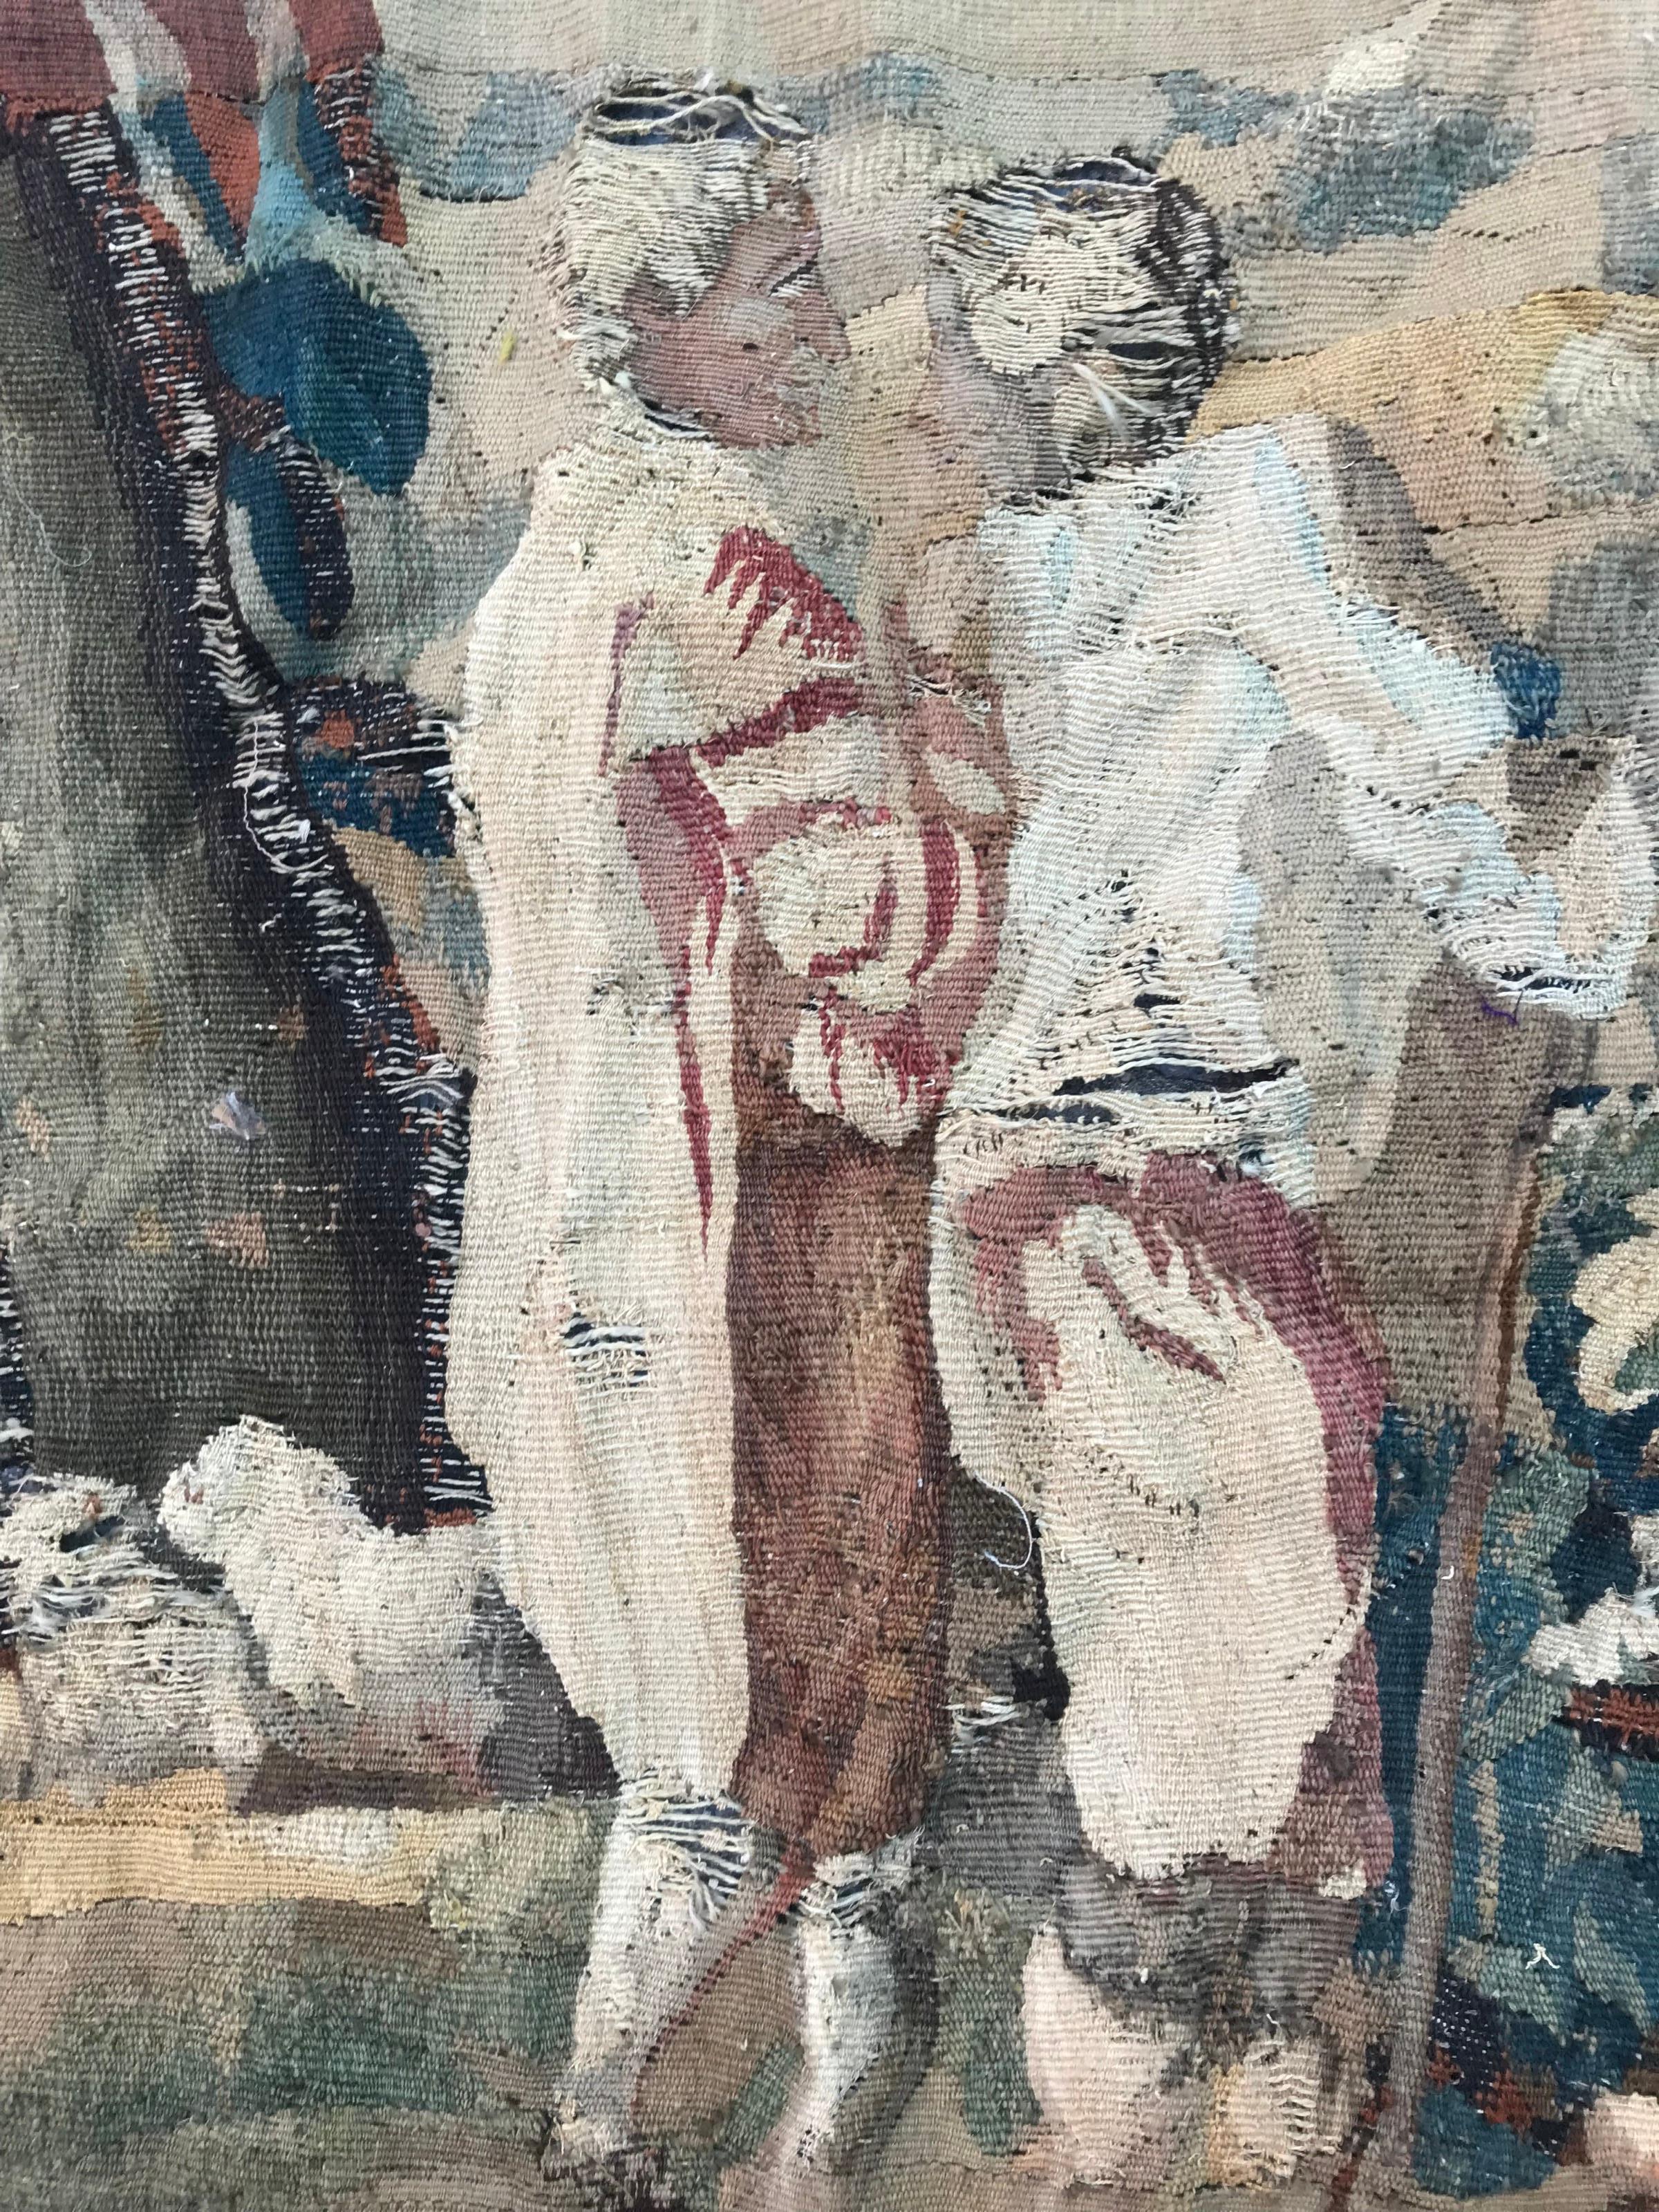 Fragment eines Aubusson-Wandteppichs aus dem 18. Jahrhundert mit einem Hirtenmotiv.

Werfen Sie einen Blick auf andere Bobyrug Artikel! , Suche nach 